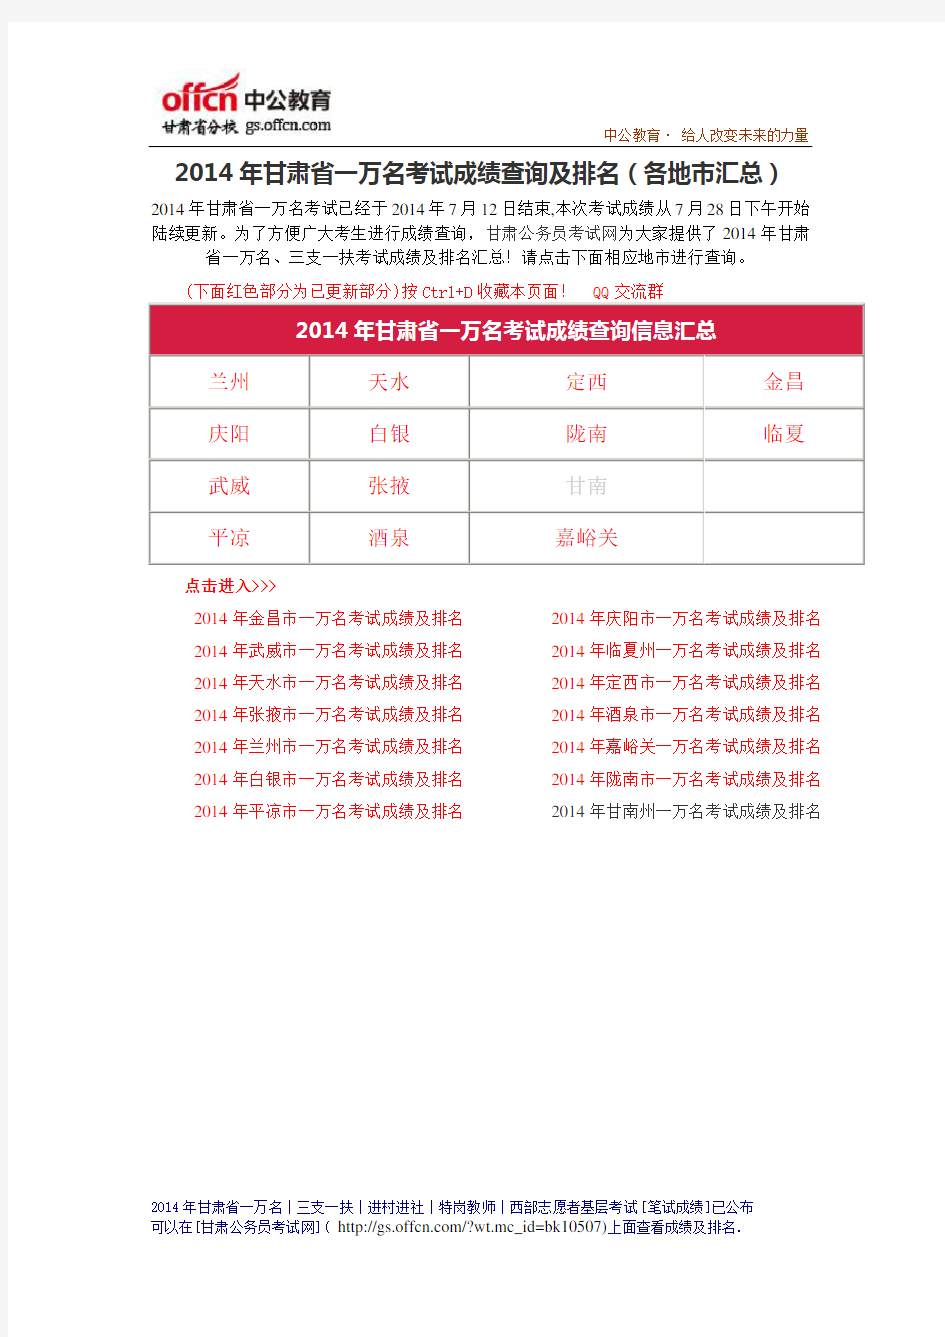 2014年甘肃省一万名考试成绩排名 (32)